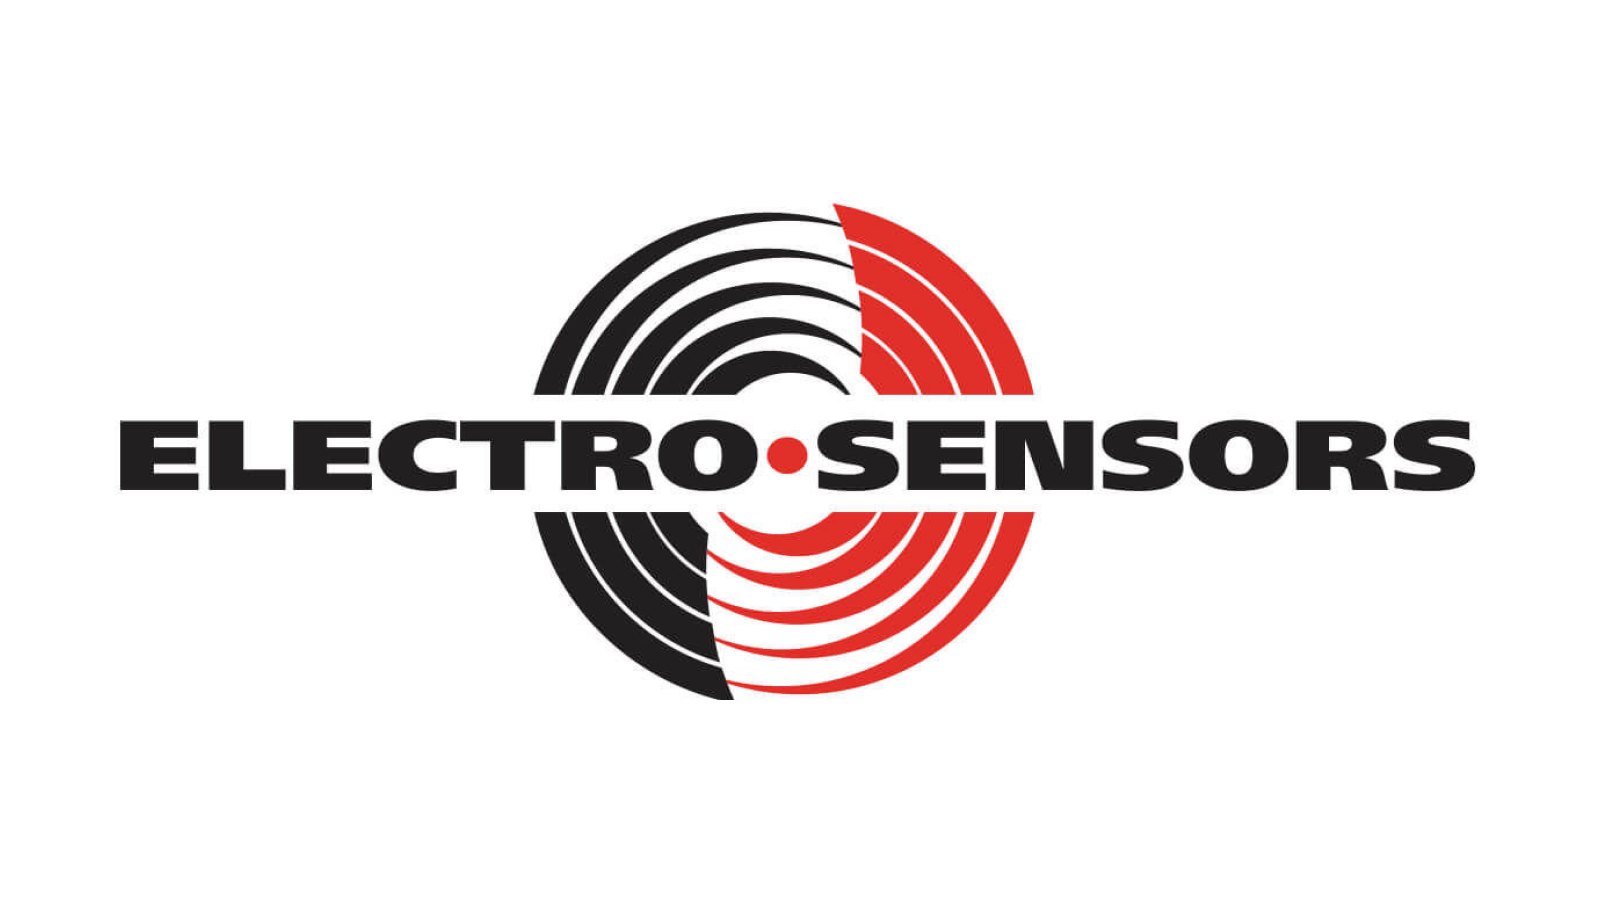 Жесткий электро. Электро лого. Логотип компании сенсор. Фирма электро. Ситроникс электро лого.